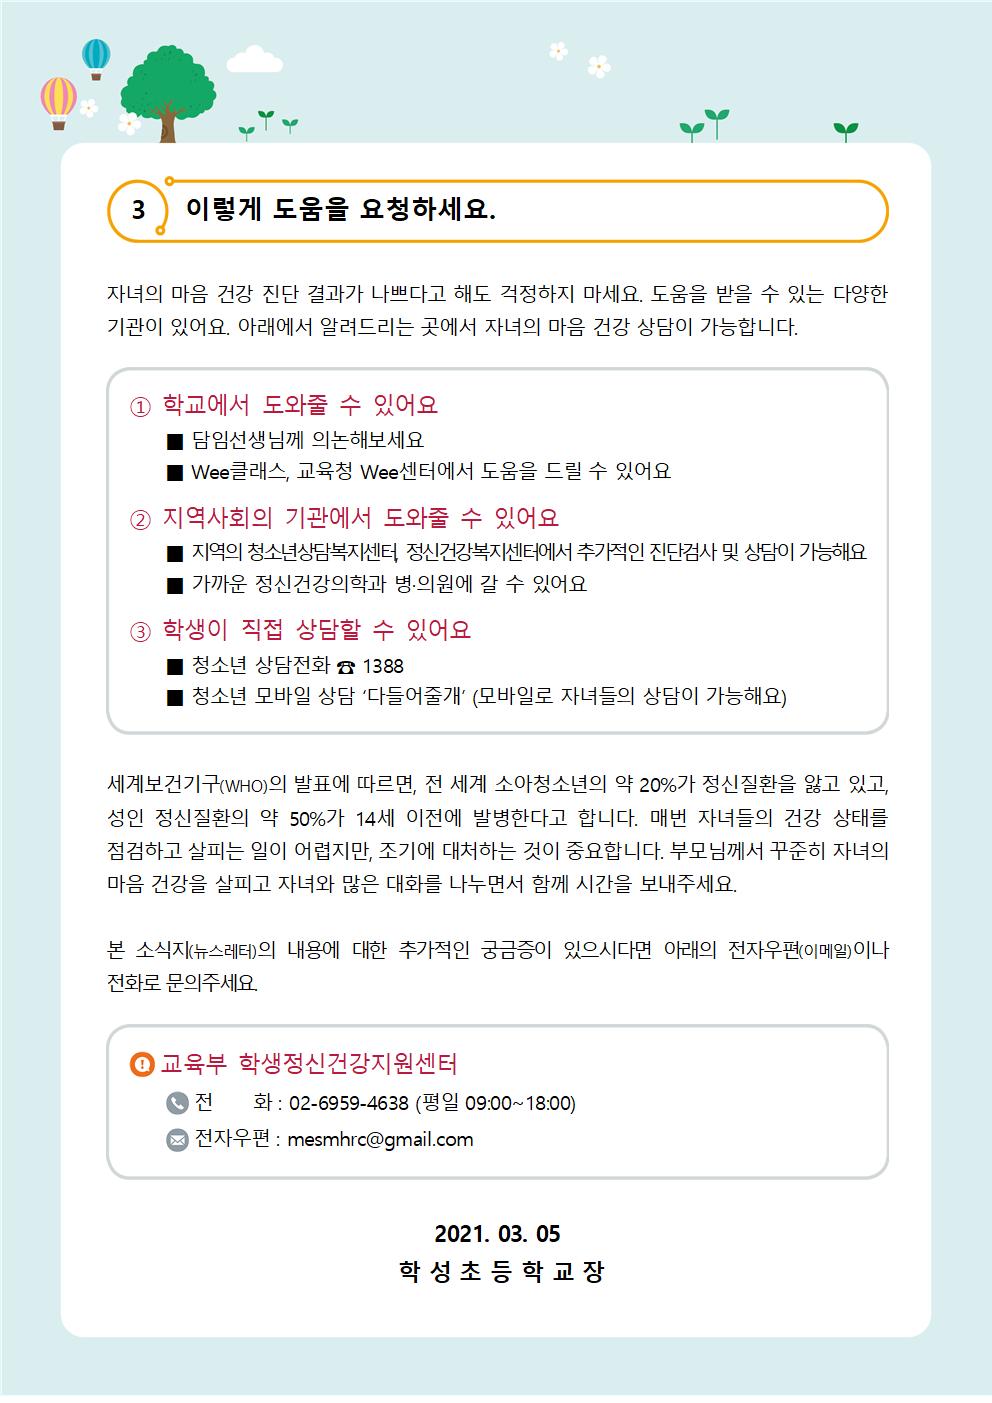 뉴스레터 제 2021-1호(특별호) 신학기 가정통신문003